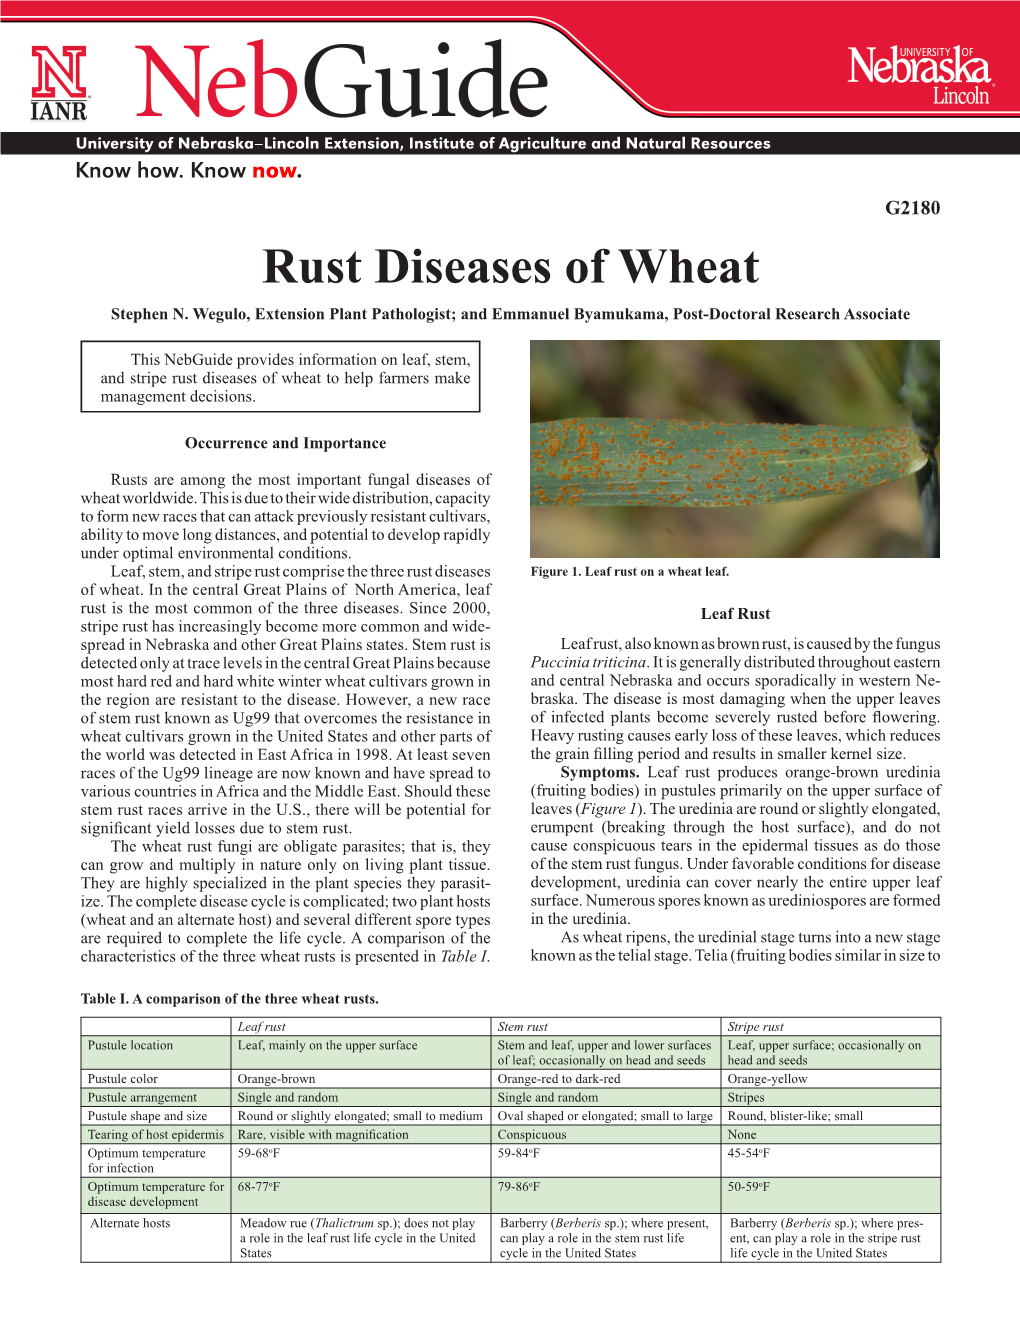 Rust Diseases of Wheat Stephen N